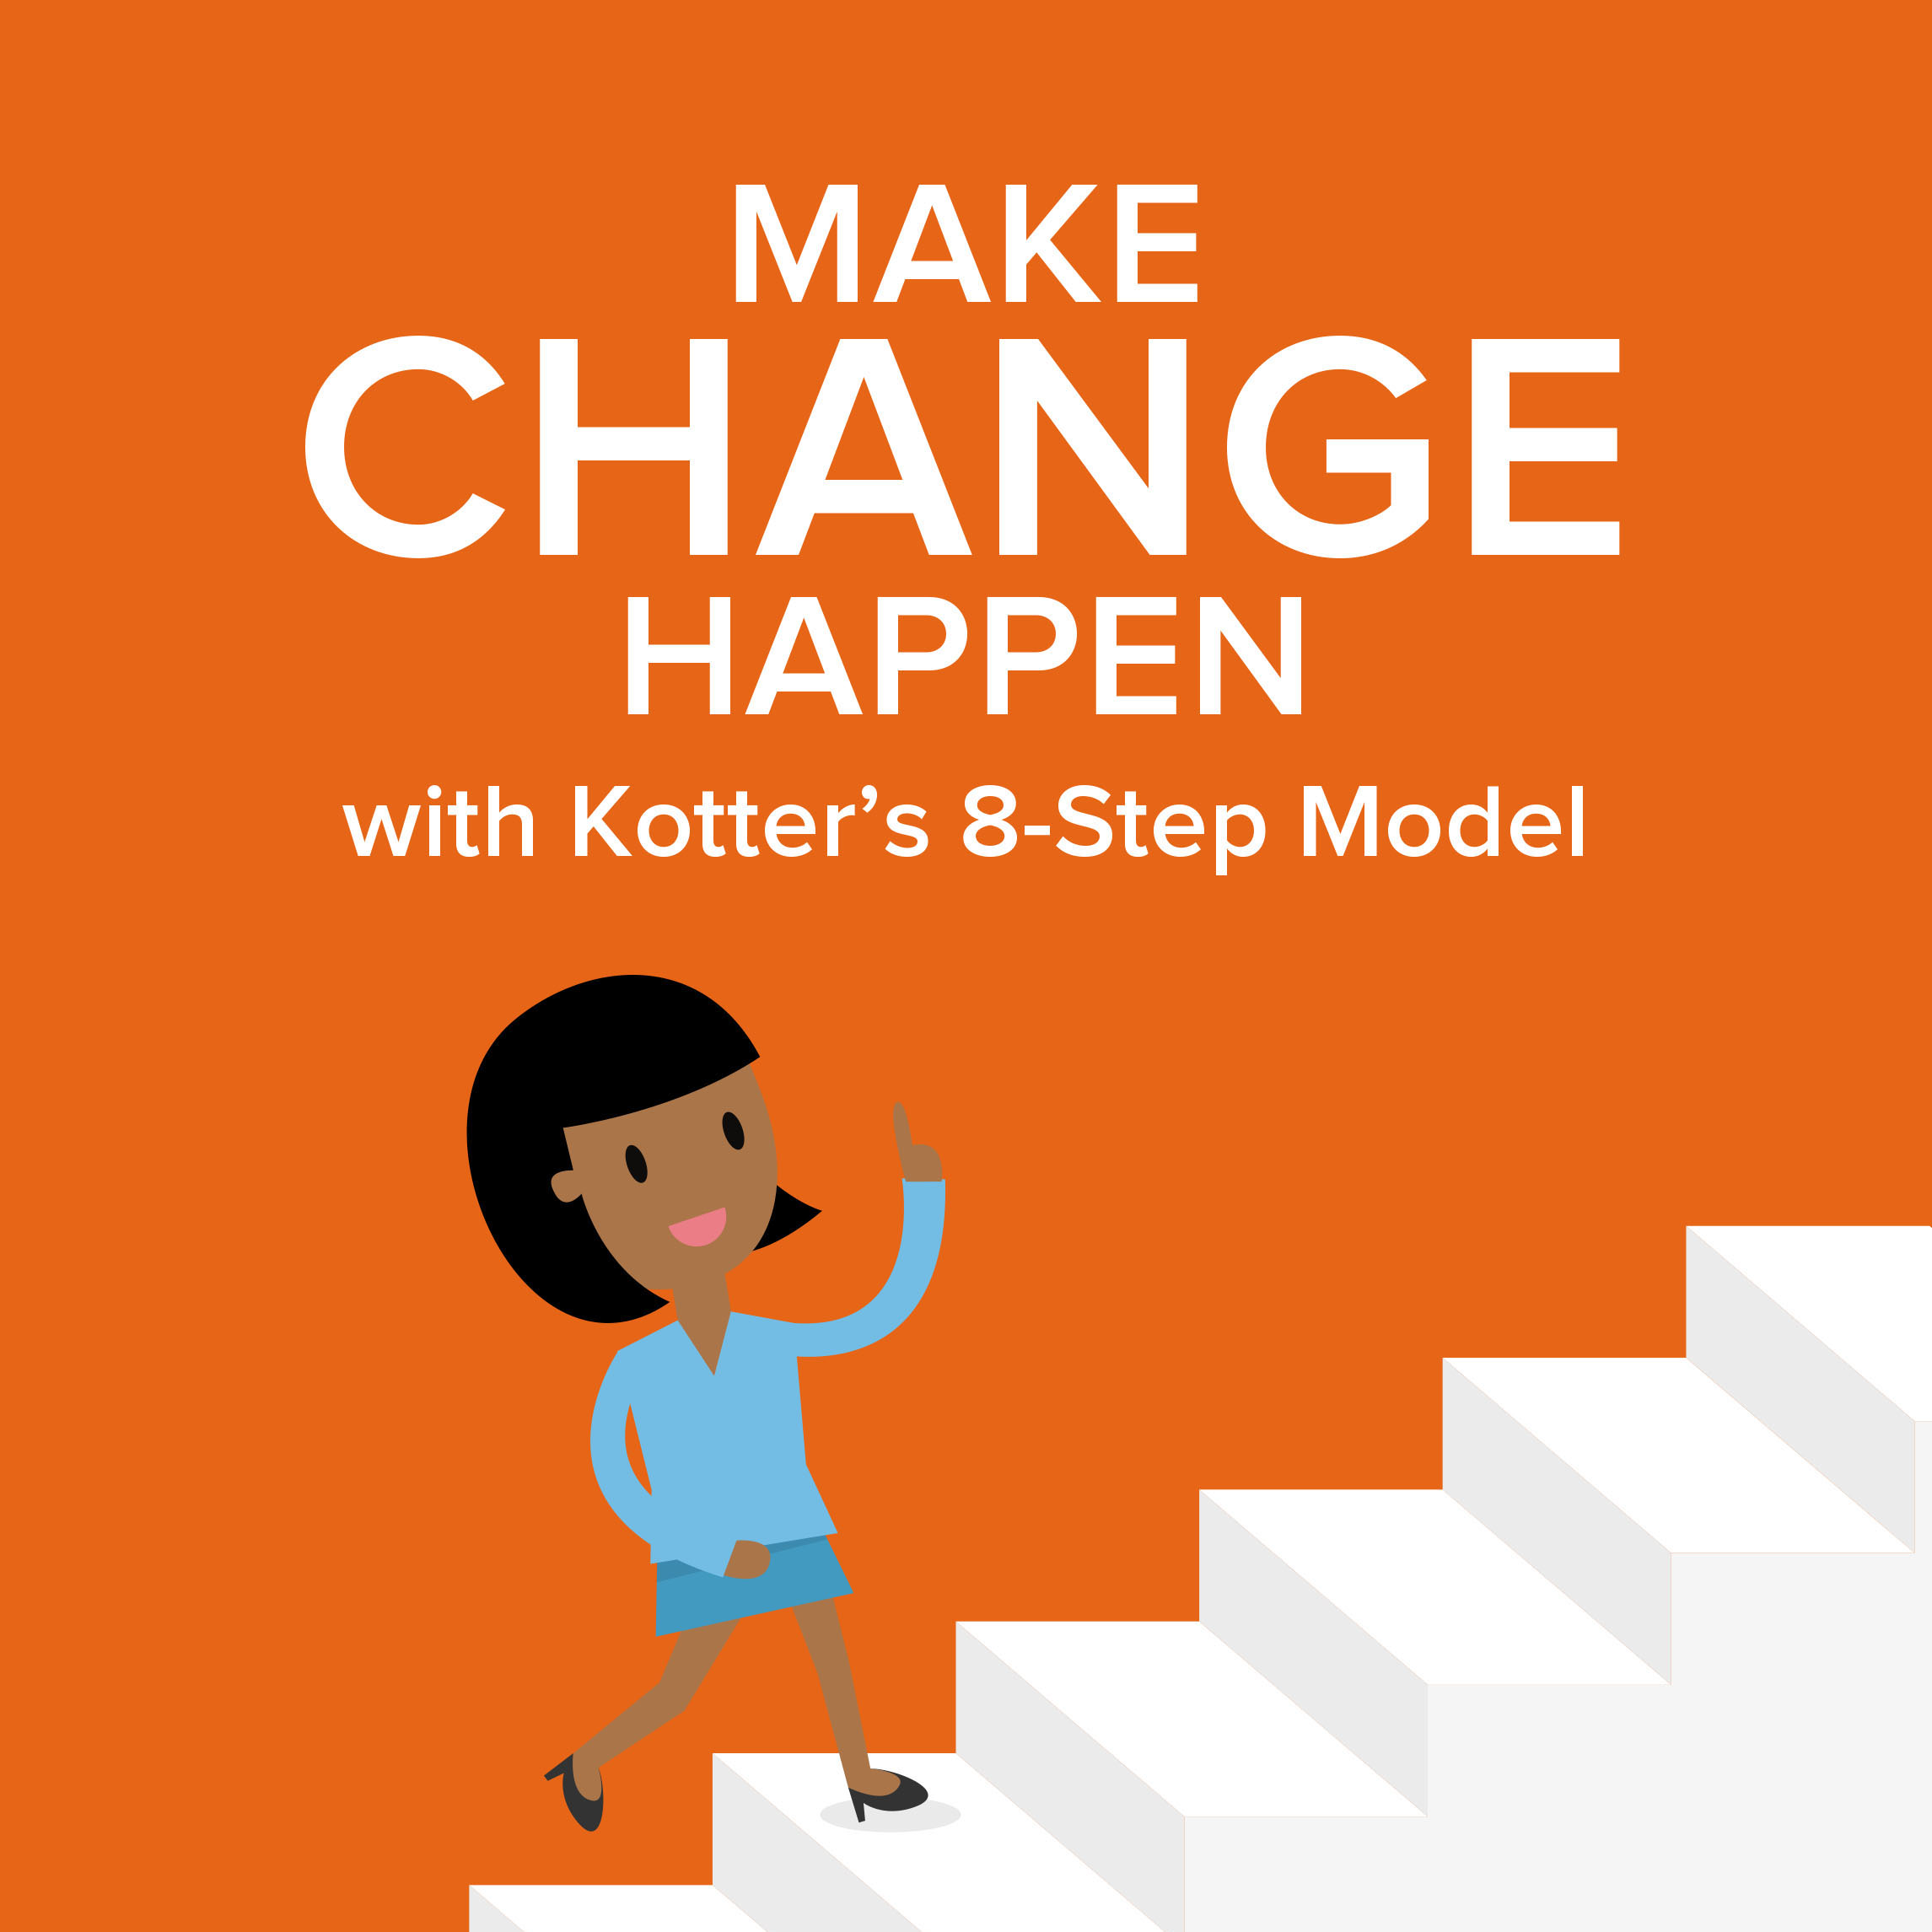 Kotter's Eight-Step Change Model